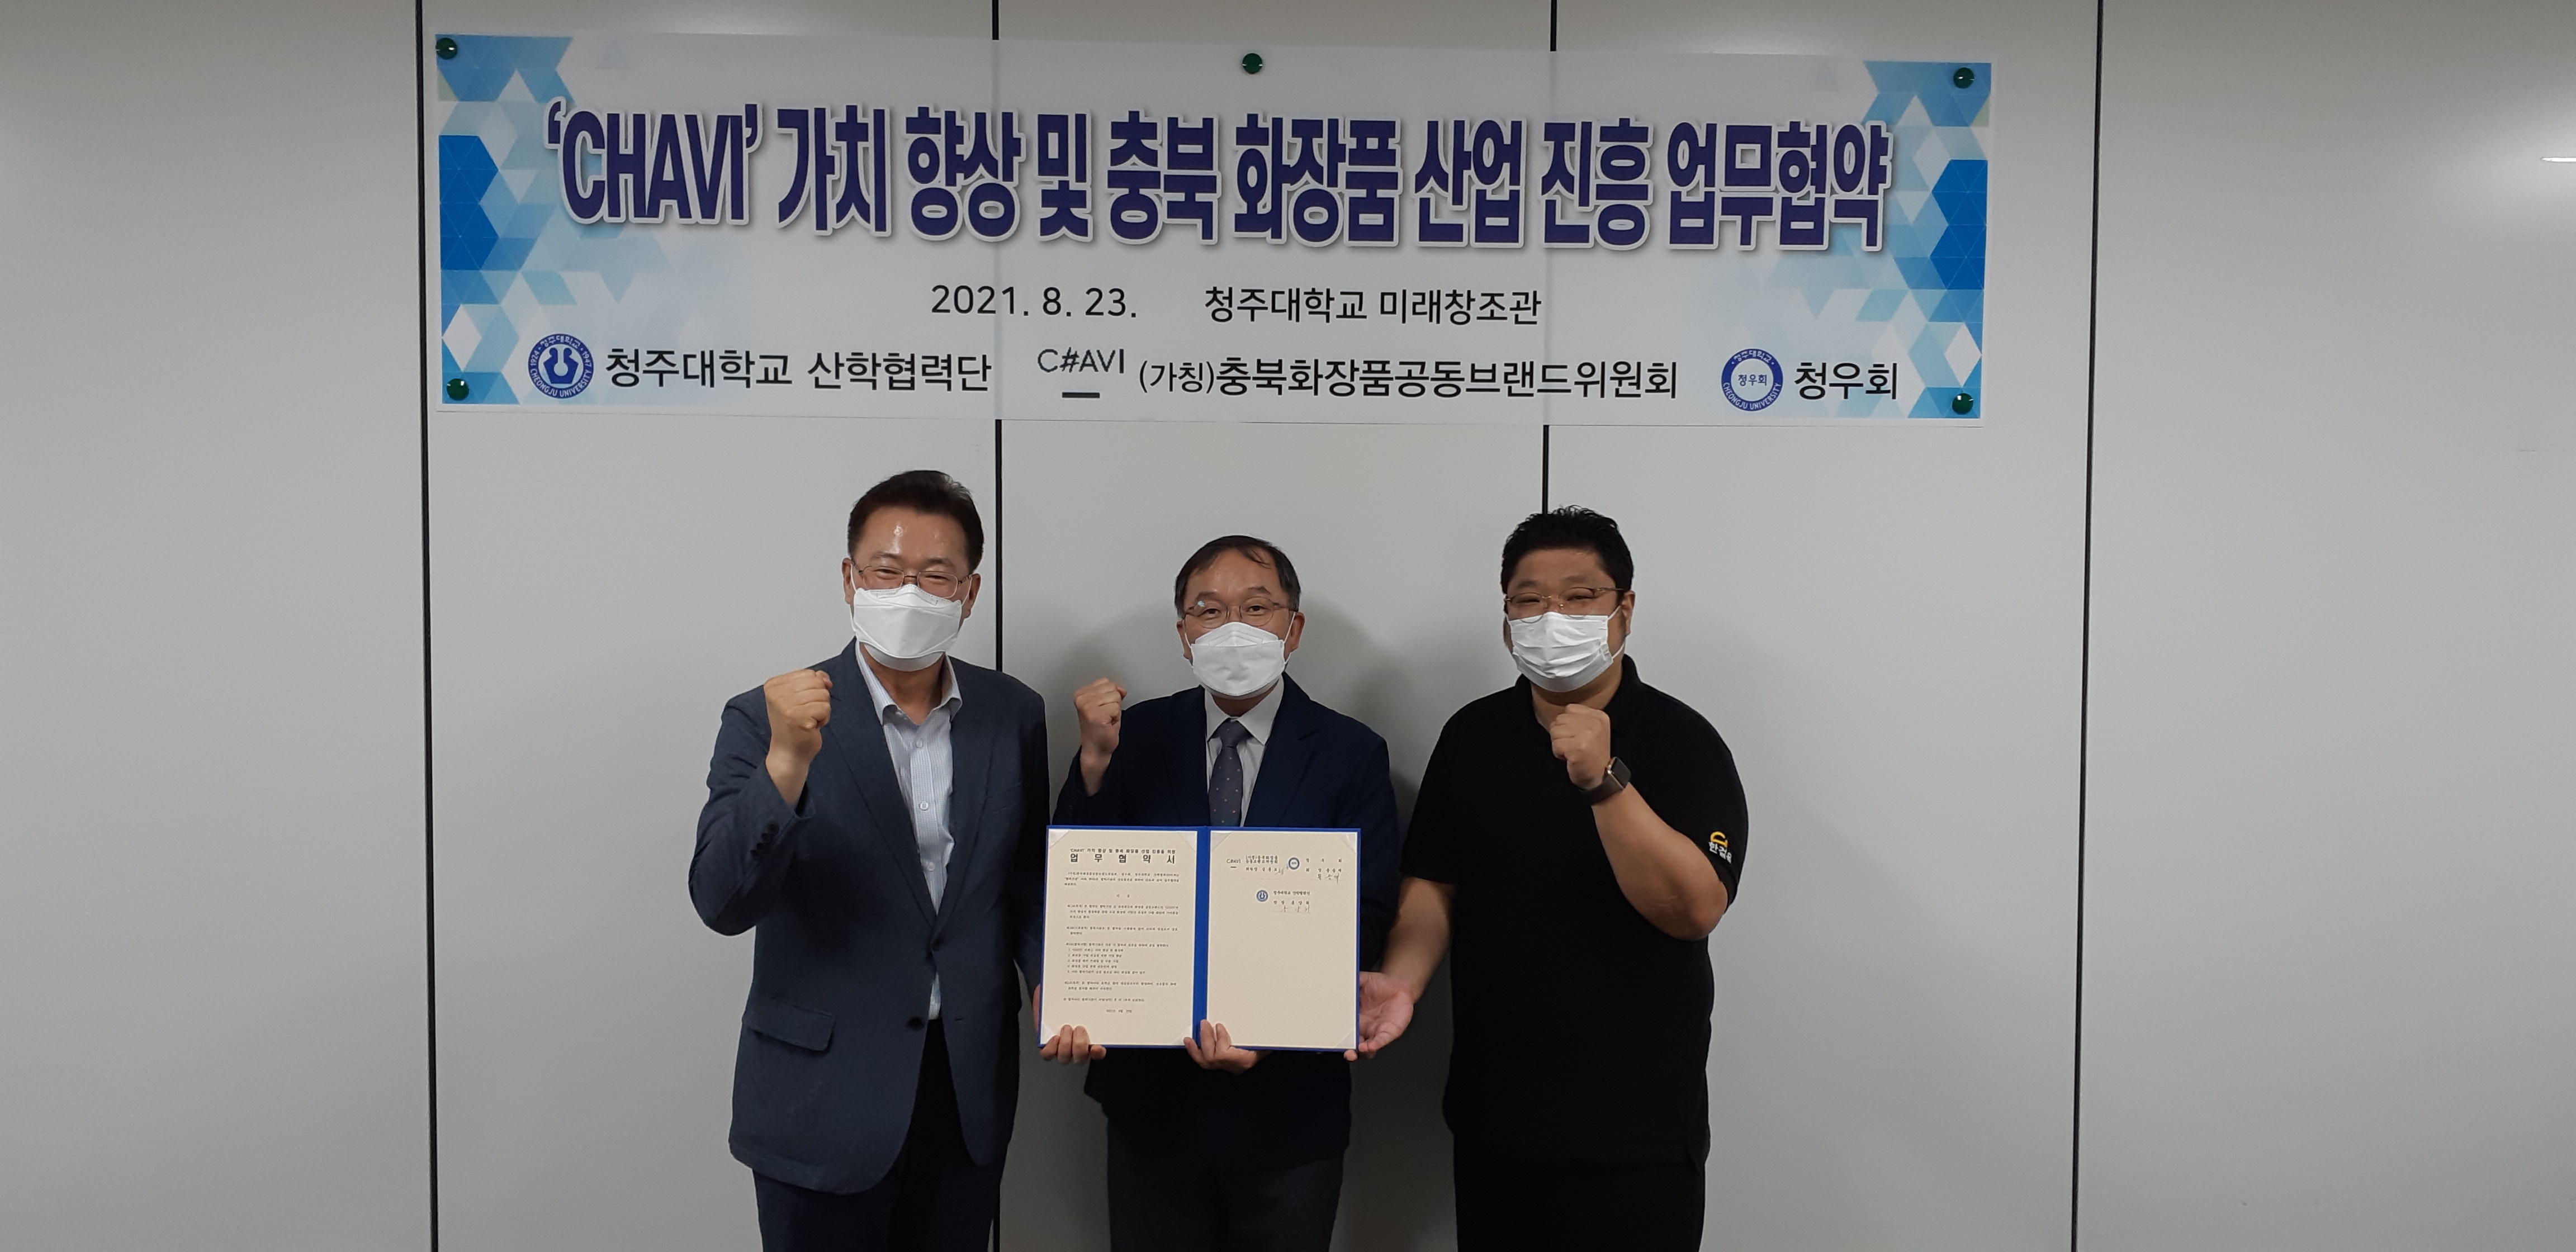 충북 화장품 공동브랜드 'CHAVI' 가치 향상 업무협약 1번째 파일